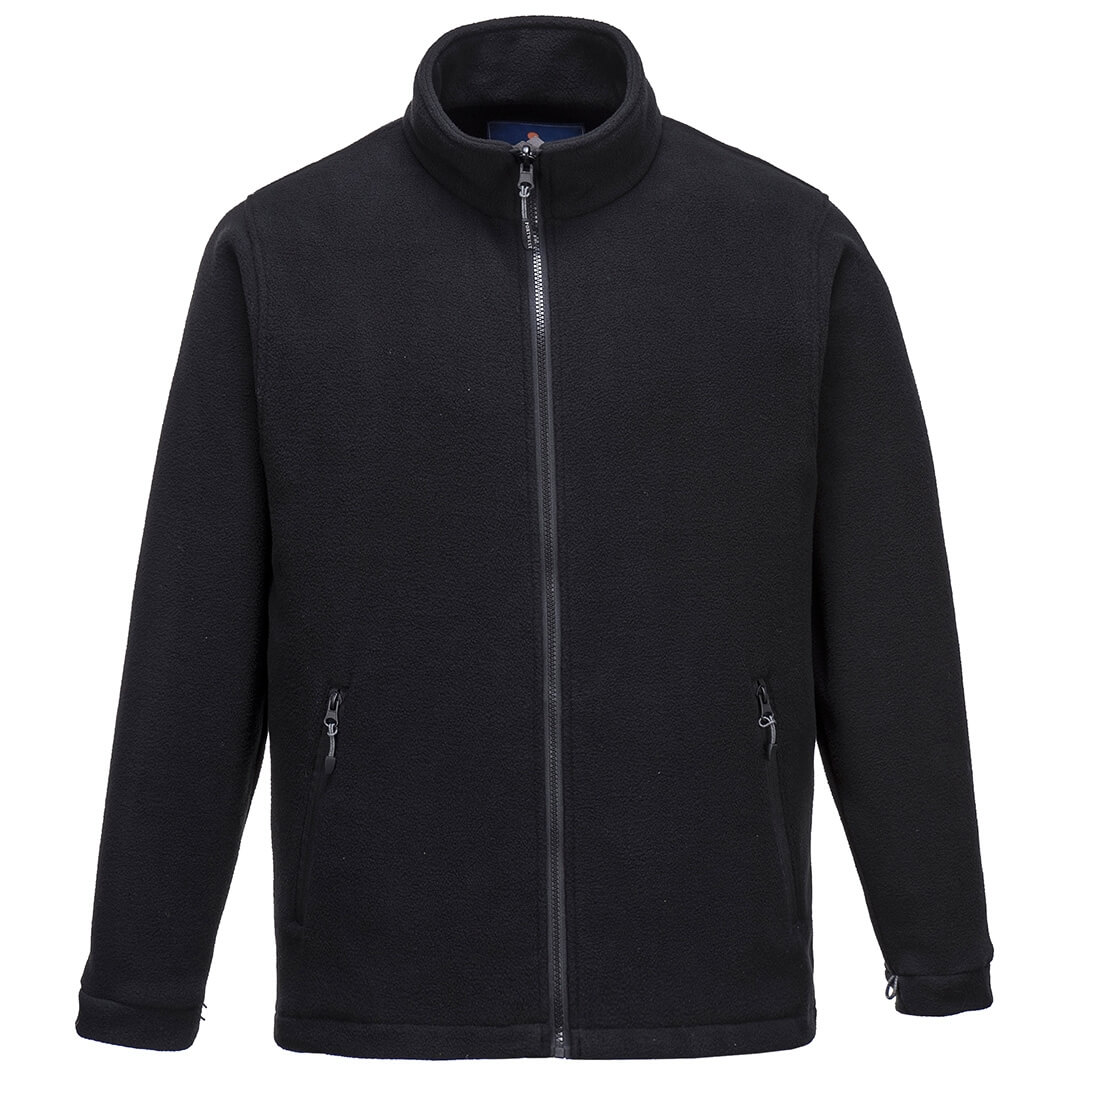 Argo 3 in 1 Jacket - Safetywear